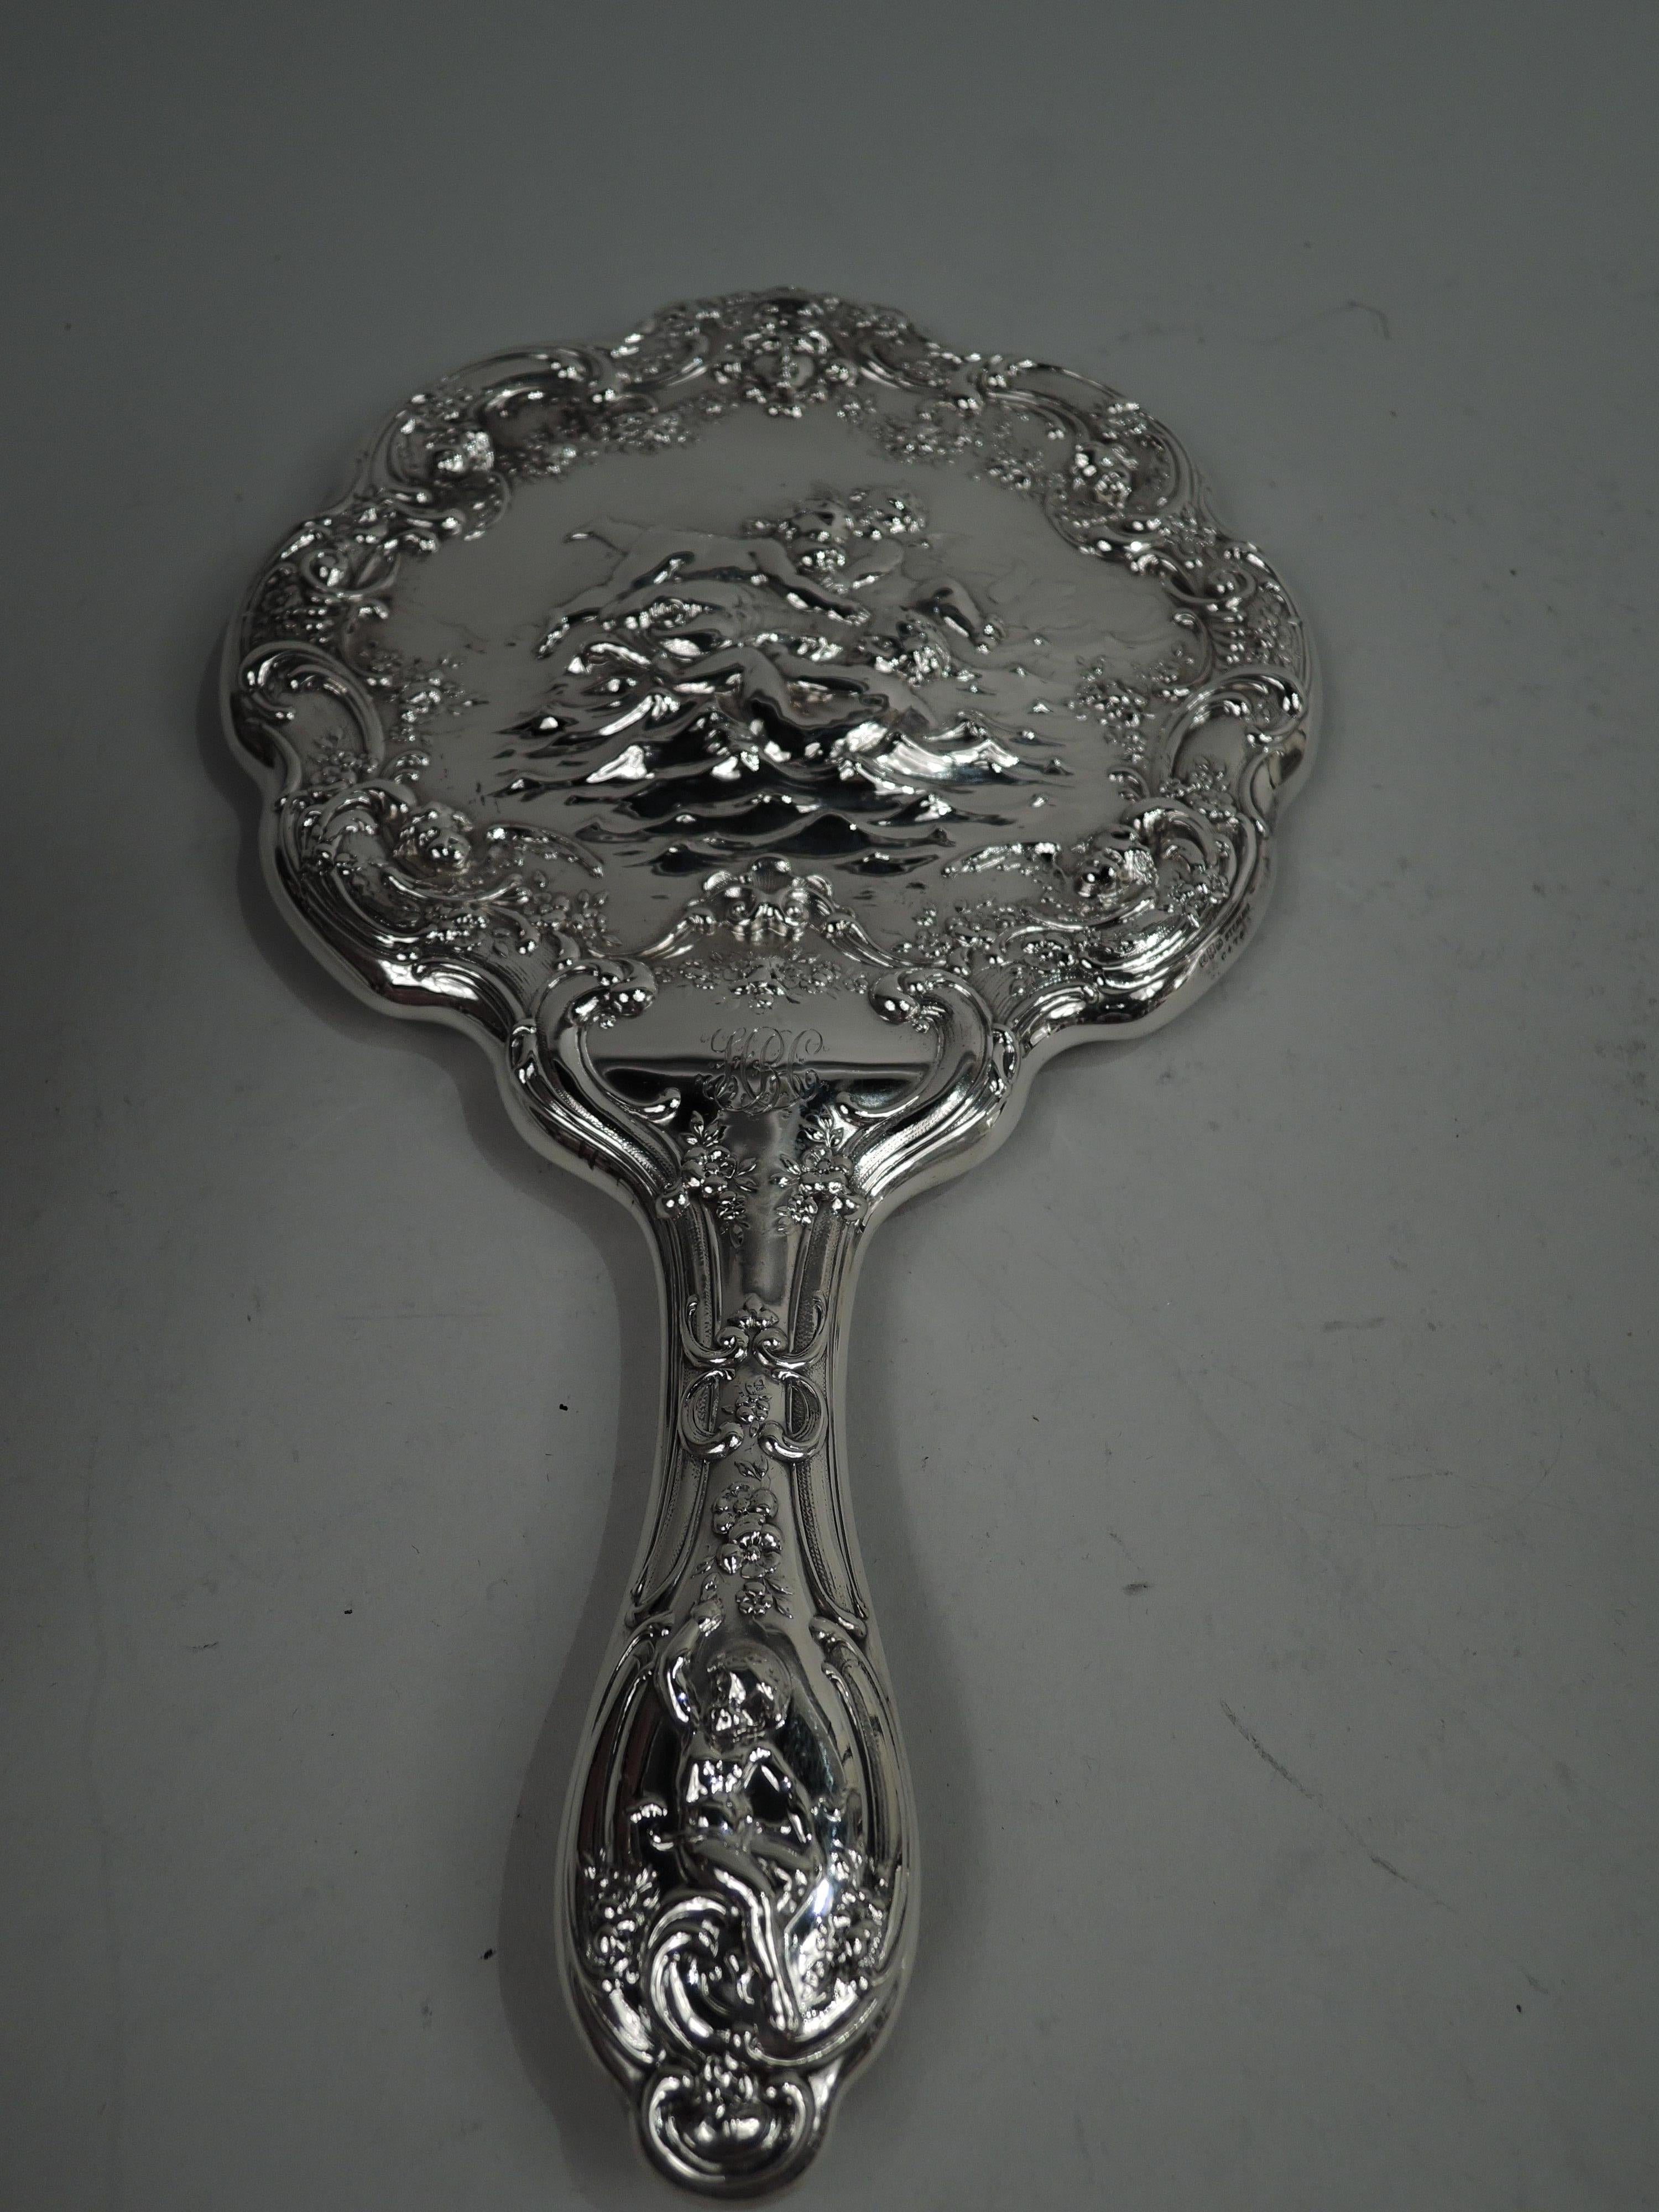 Edwardian Classical Sterling Silber Eitelkeit Paar. Hergestellt von Gorham in Providence, um 1900. Dieses Paar besteht aus einem Handspiegel und einer Haarbürste. Der Spiegel hat einen runden, gewellten Rahmen und die Bürste einen ovalen Rahmen.